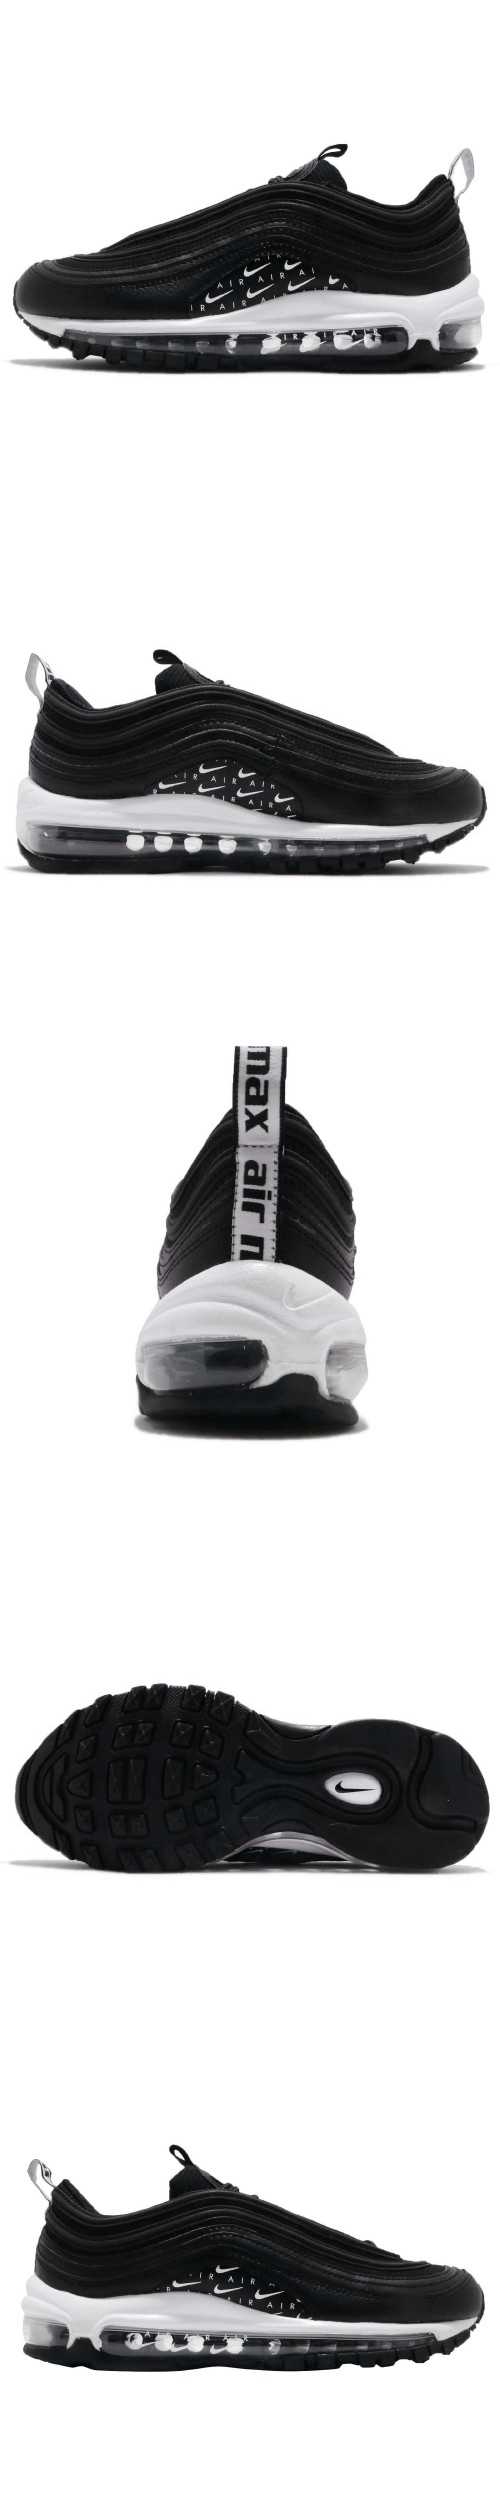 Nike 休閒鞋 Air Max 97 LX 男女鞋